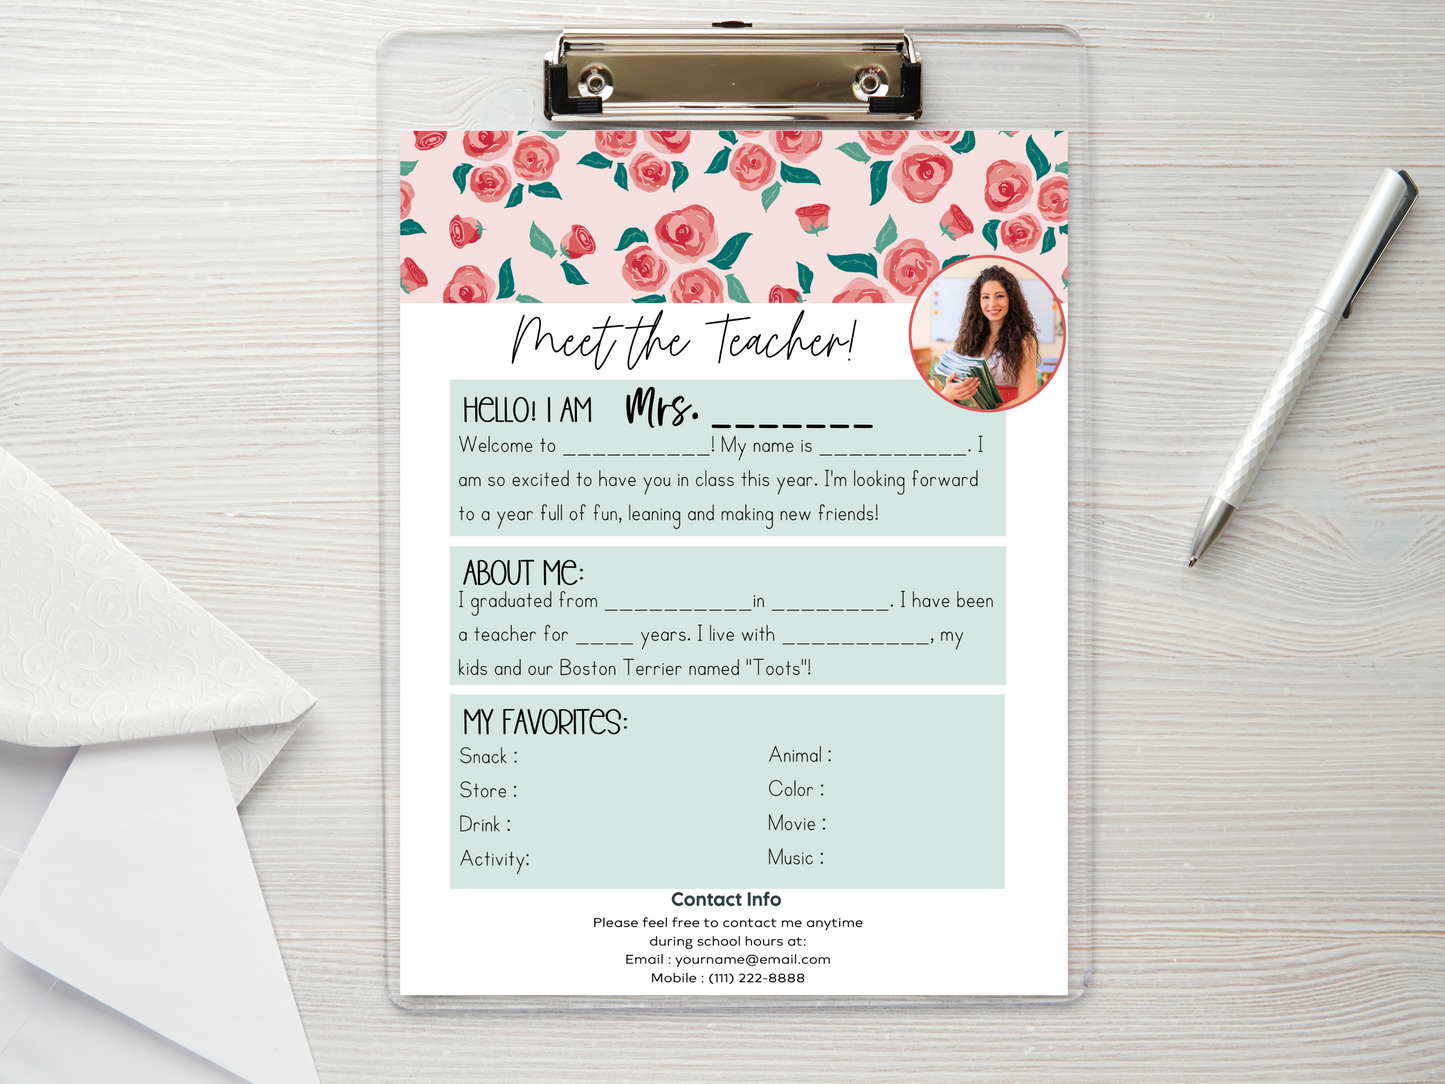 Meet the Teacher Letter Template - Floral